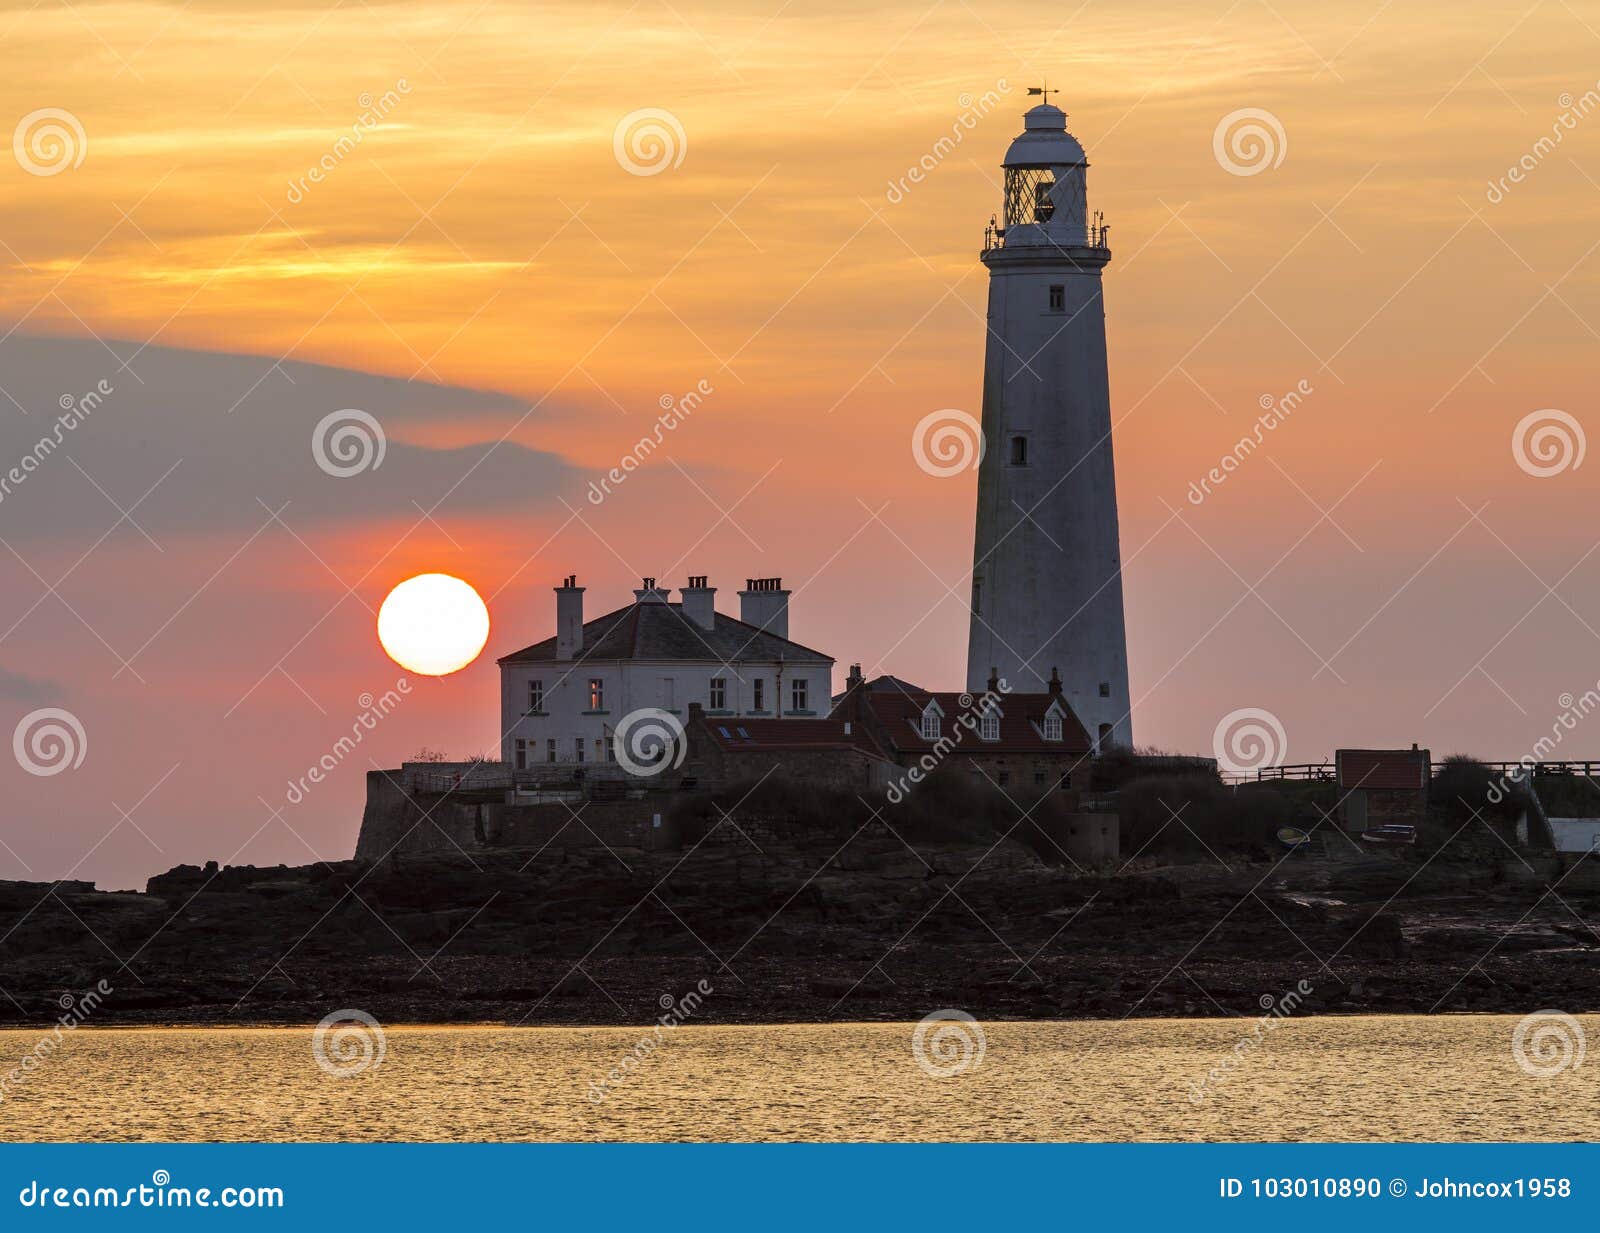 sunrise over st marys lighthouse